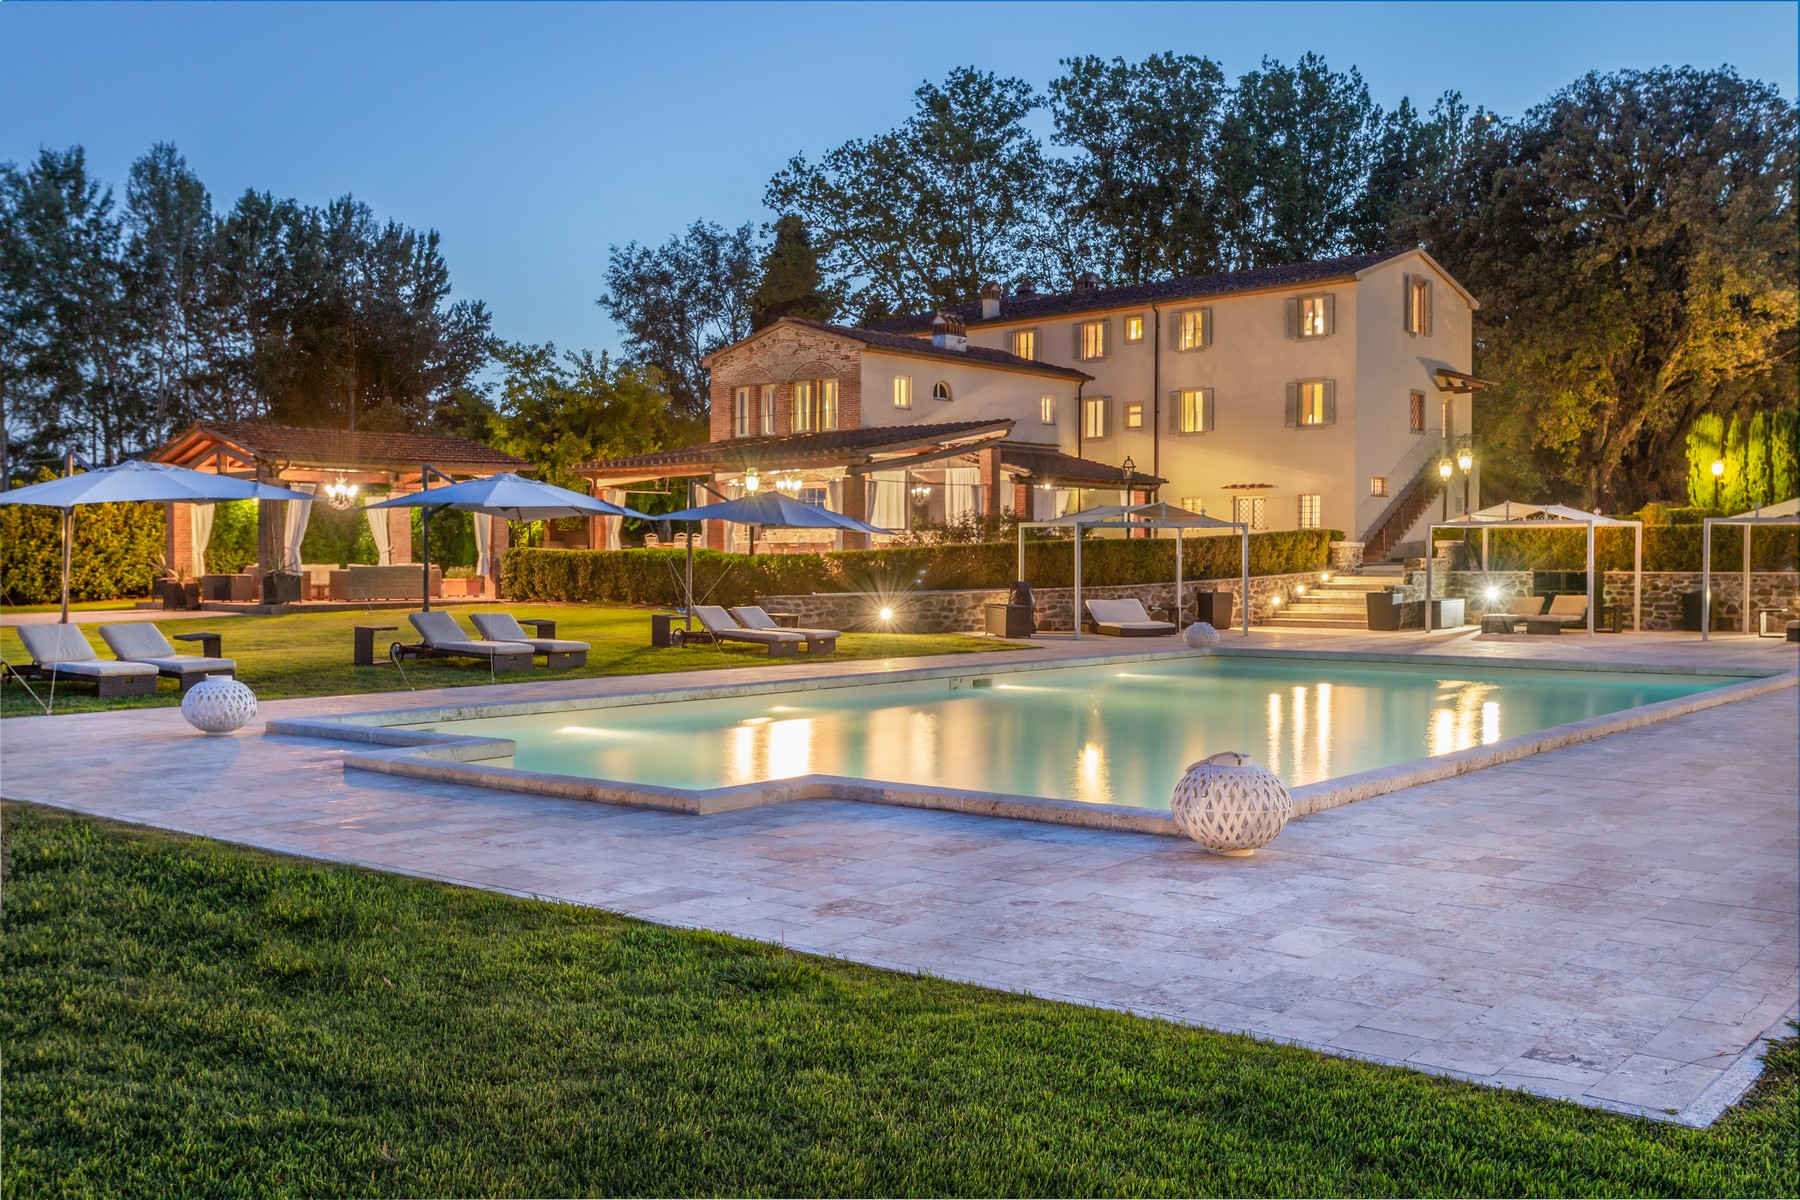 Prestigious luxury villa on the hills of Montecatini